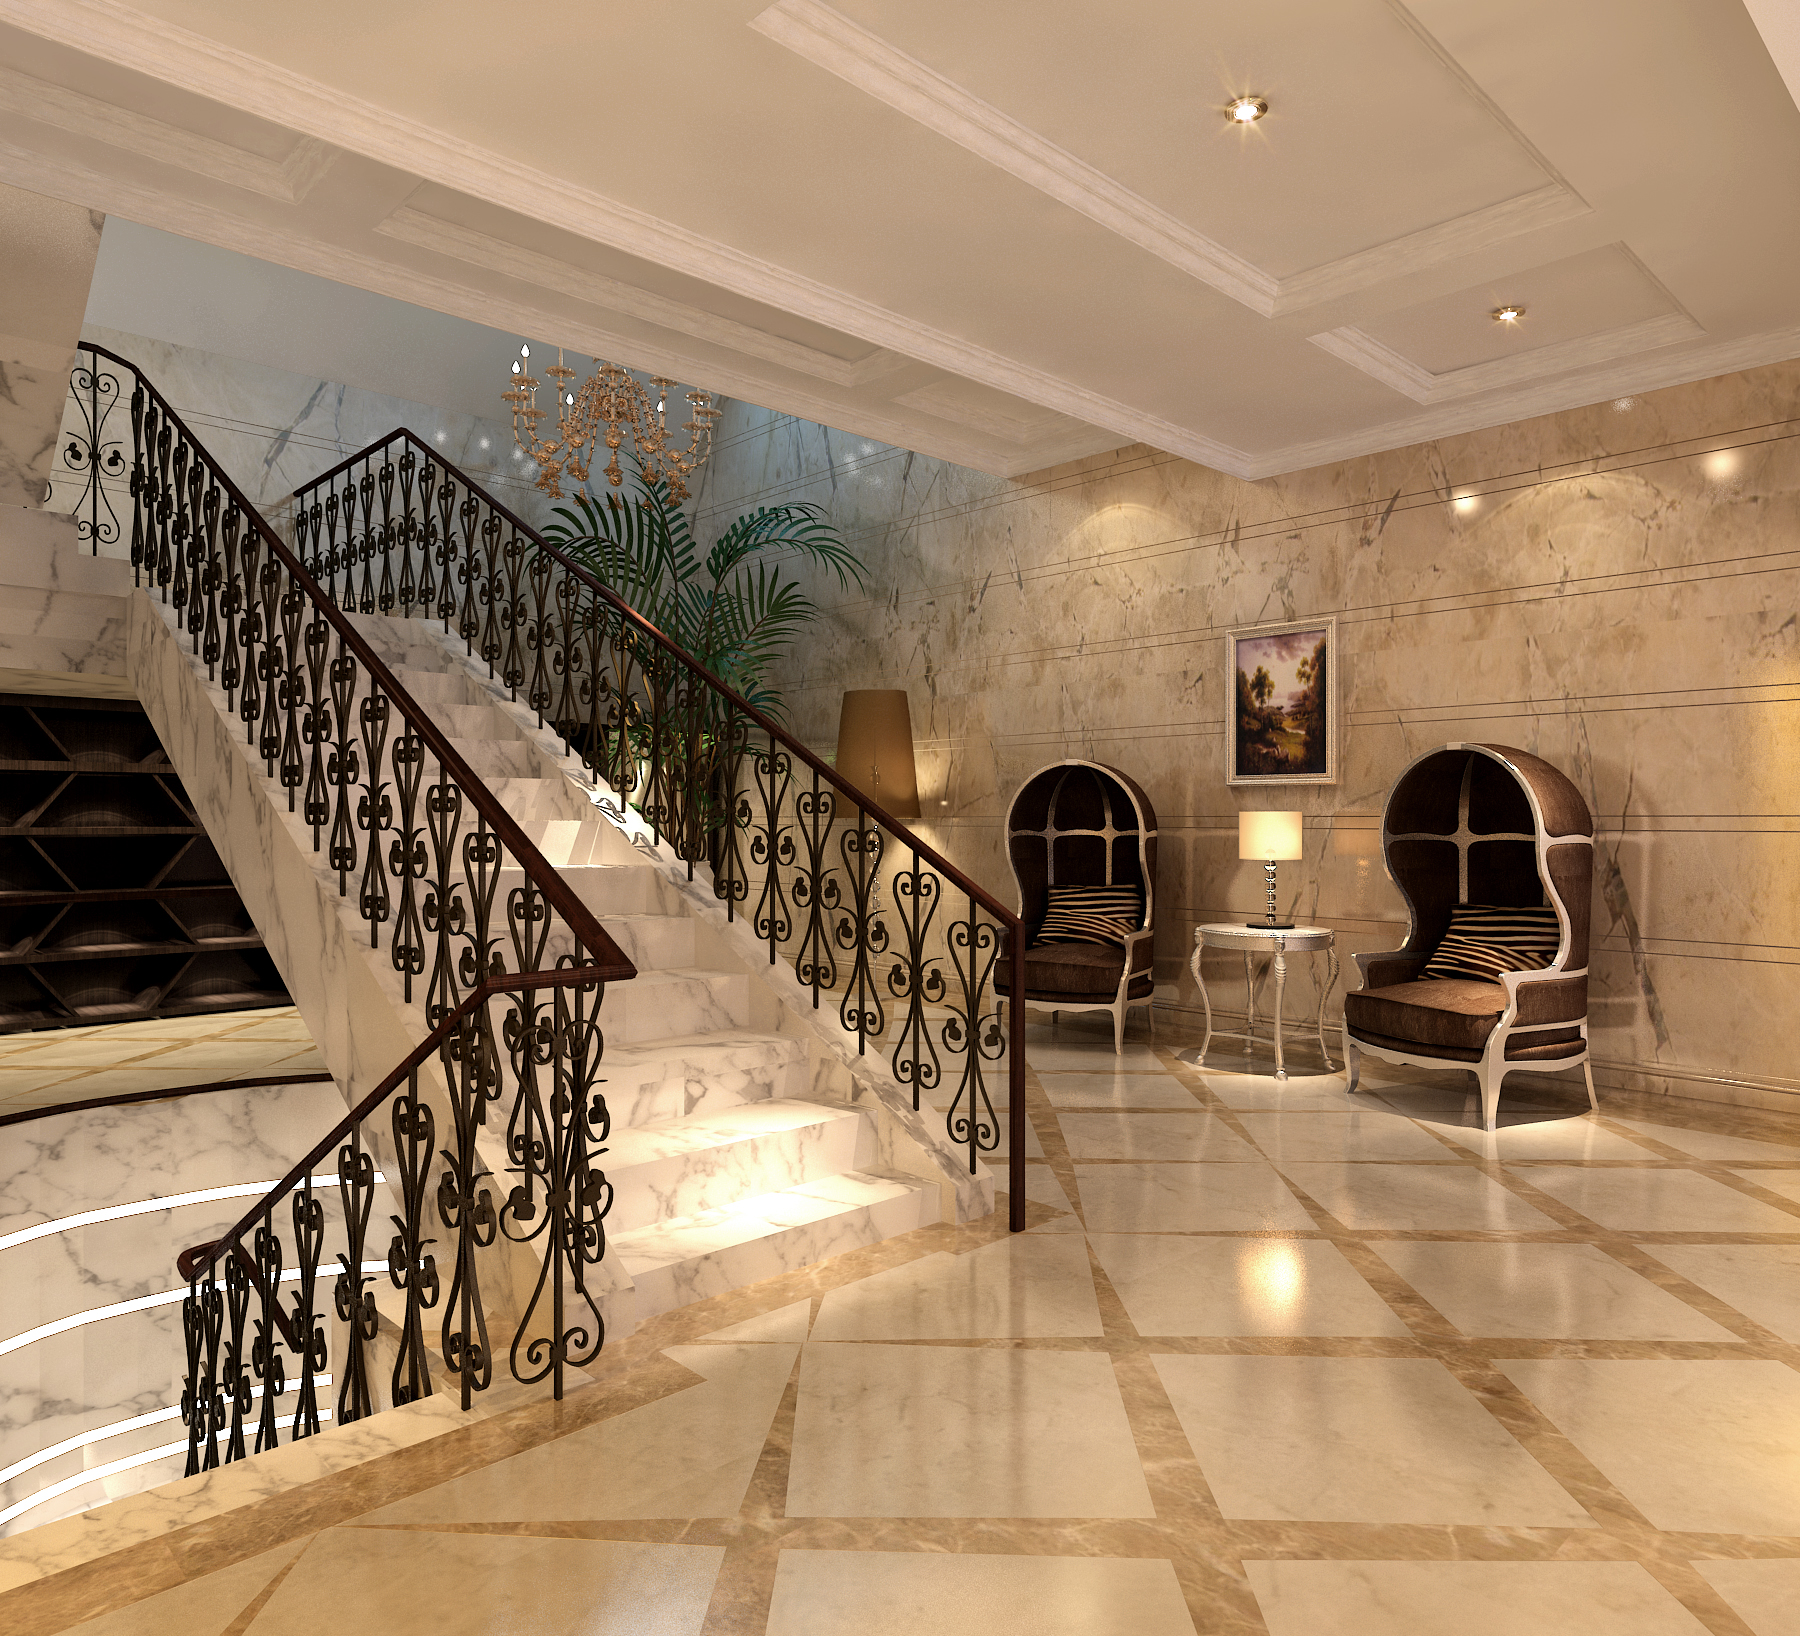 欧式 古典 原创国际 品质 墅装 全案设计 楼梯图片来自原创国际别墅装饰在和桥丽晶的分享